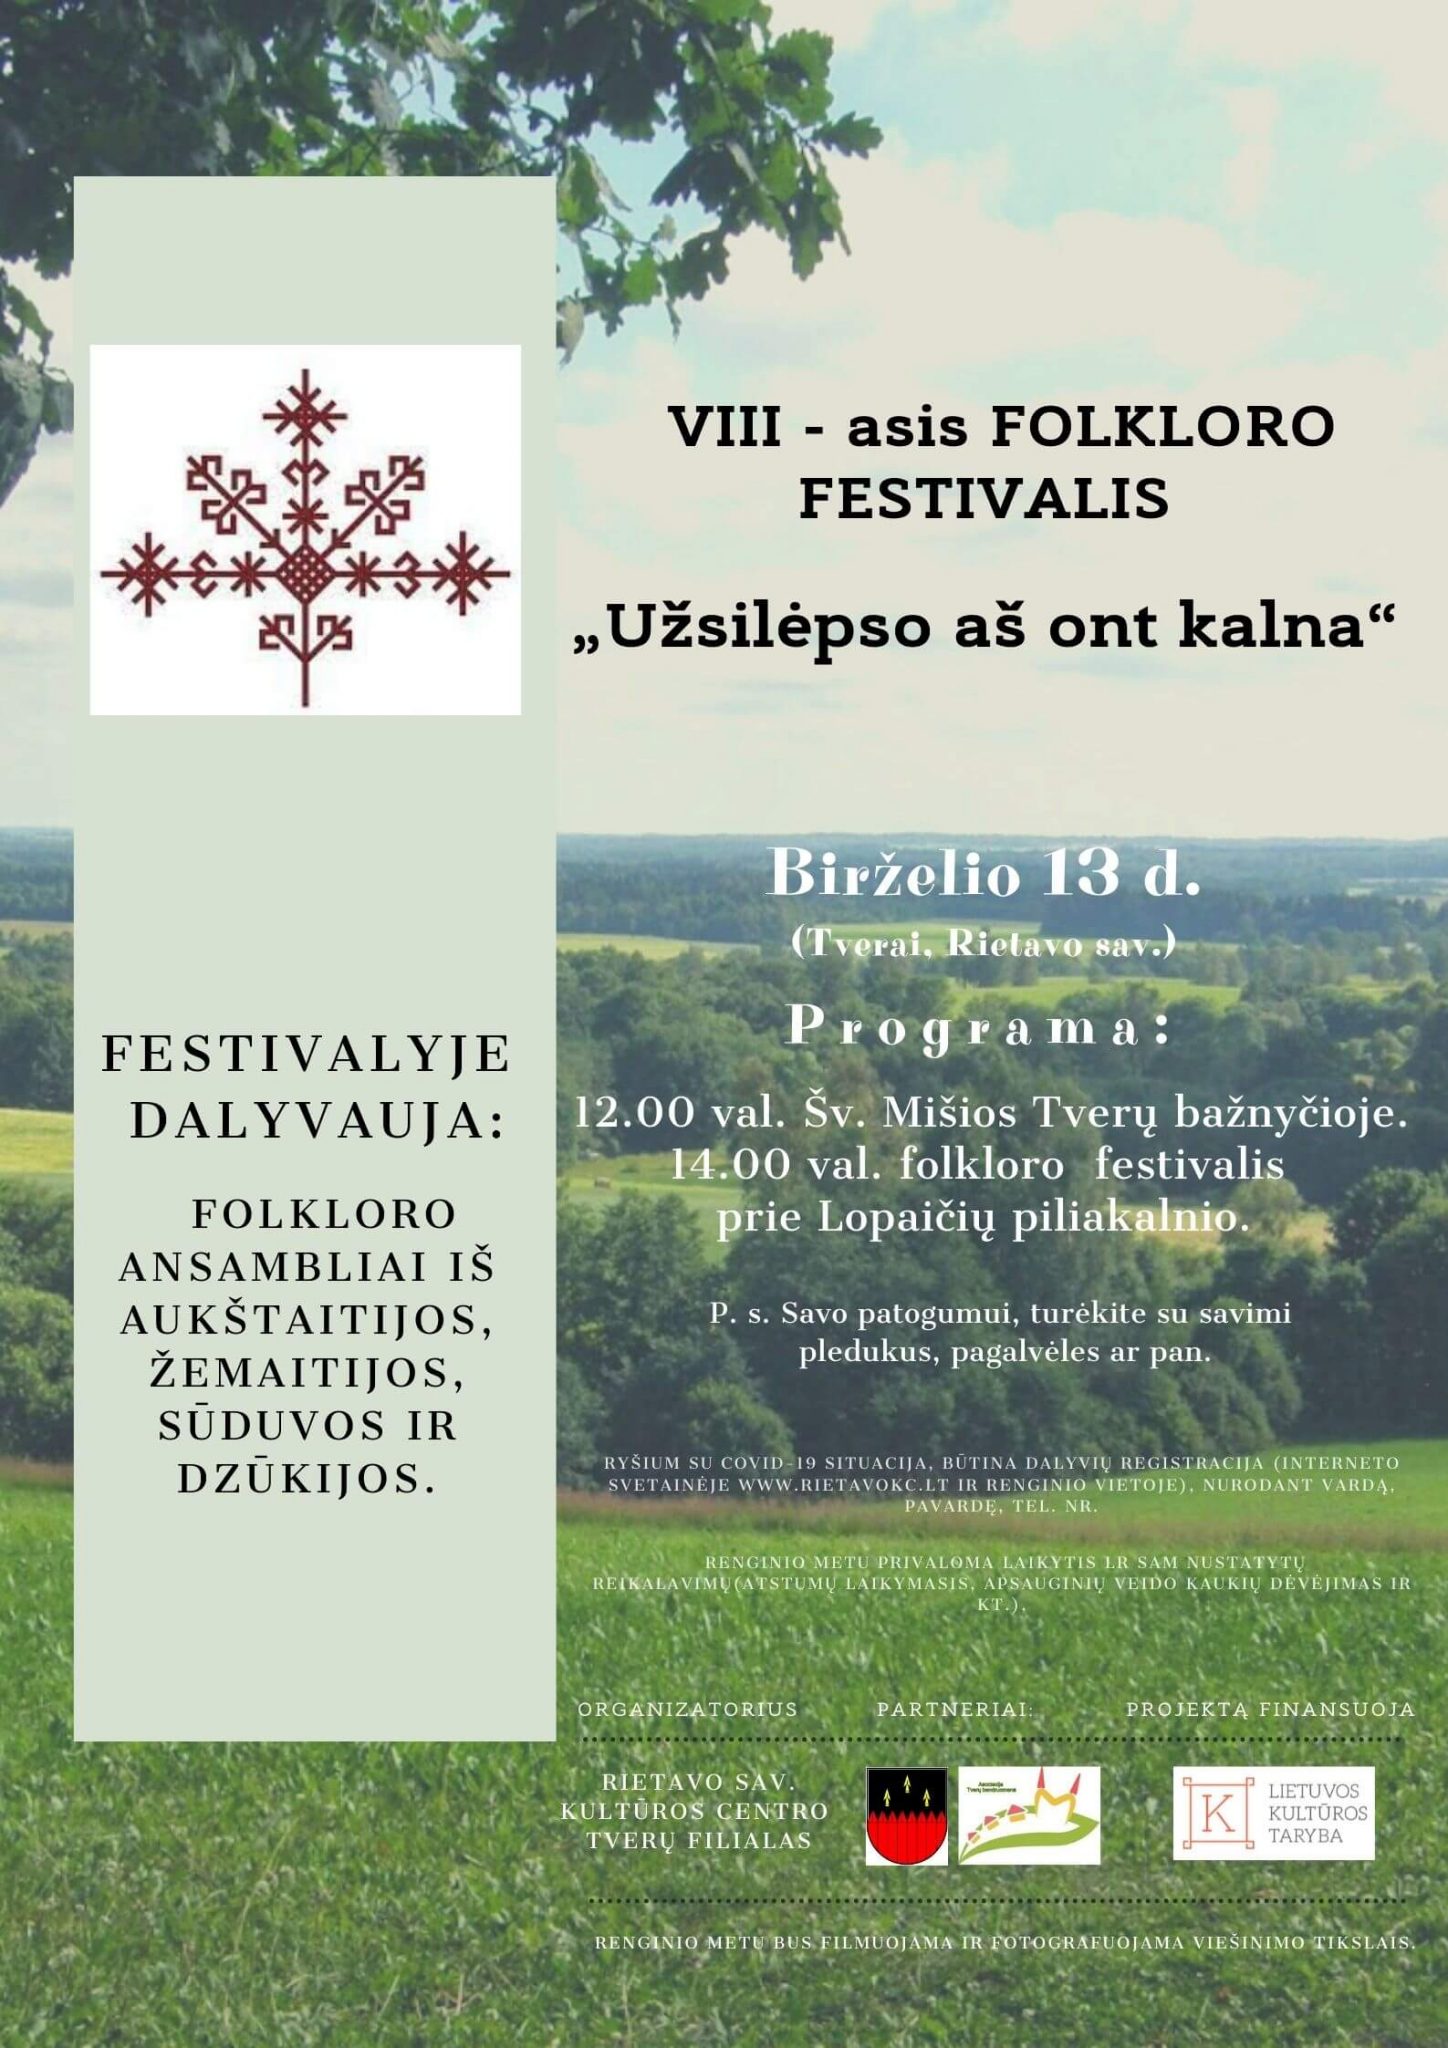 Folkloro festivalis UZSILEPSO AS ONT KALNA (1) (1) (1)